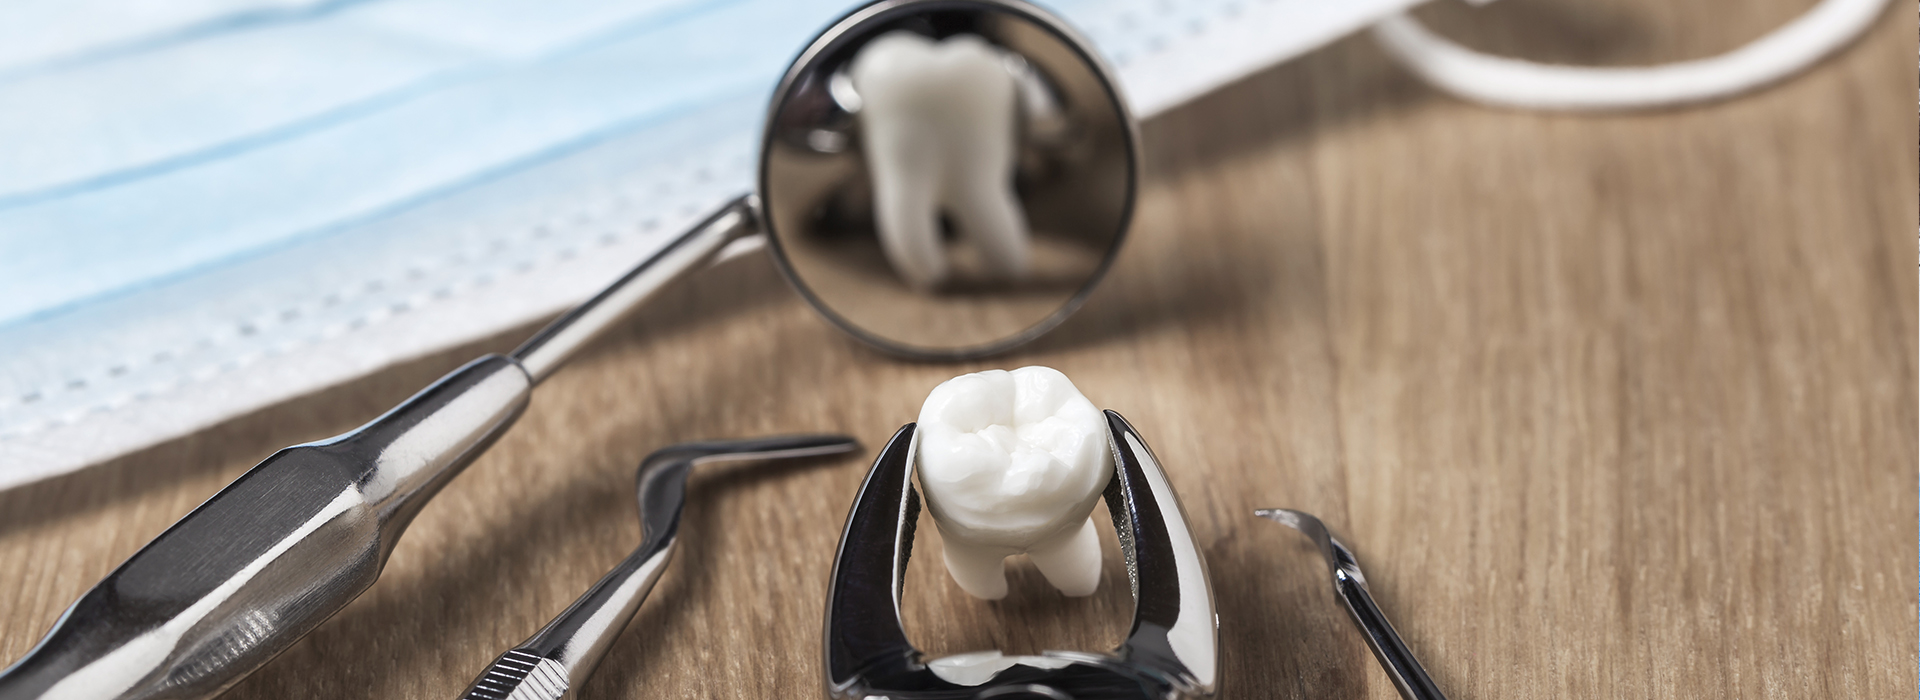 Kennedy Dentistry | Dental Bridges, Periodontal Treatment and Preventative Program